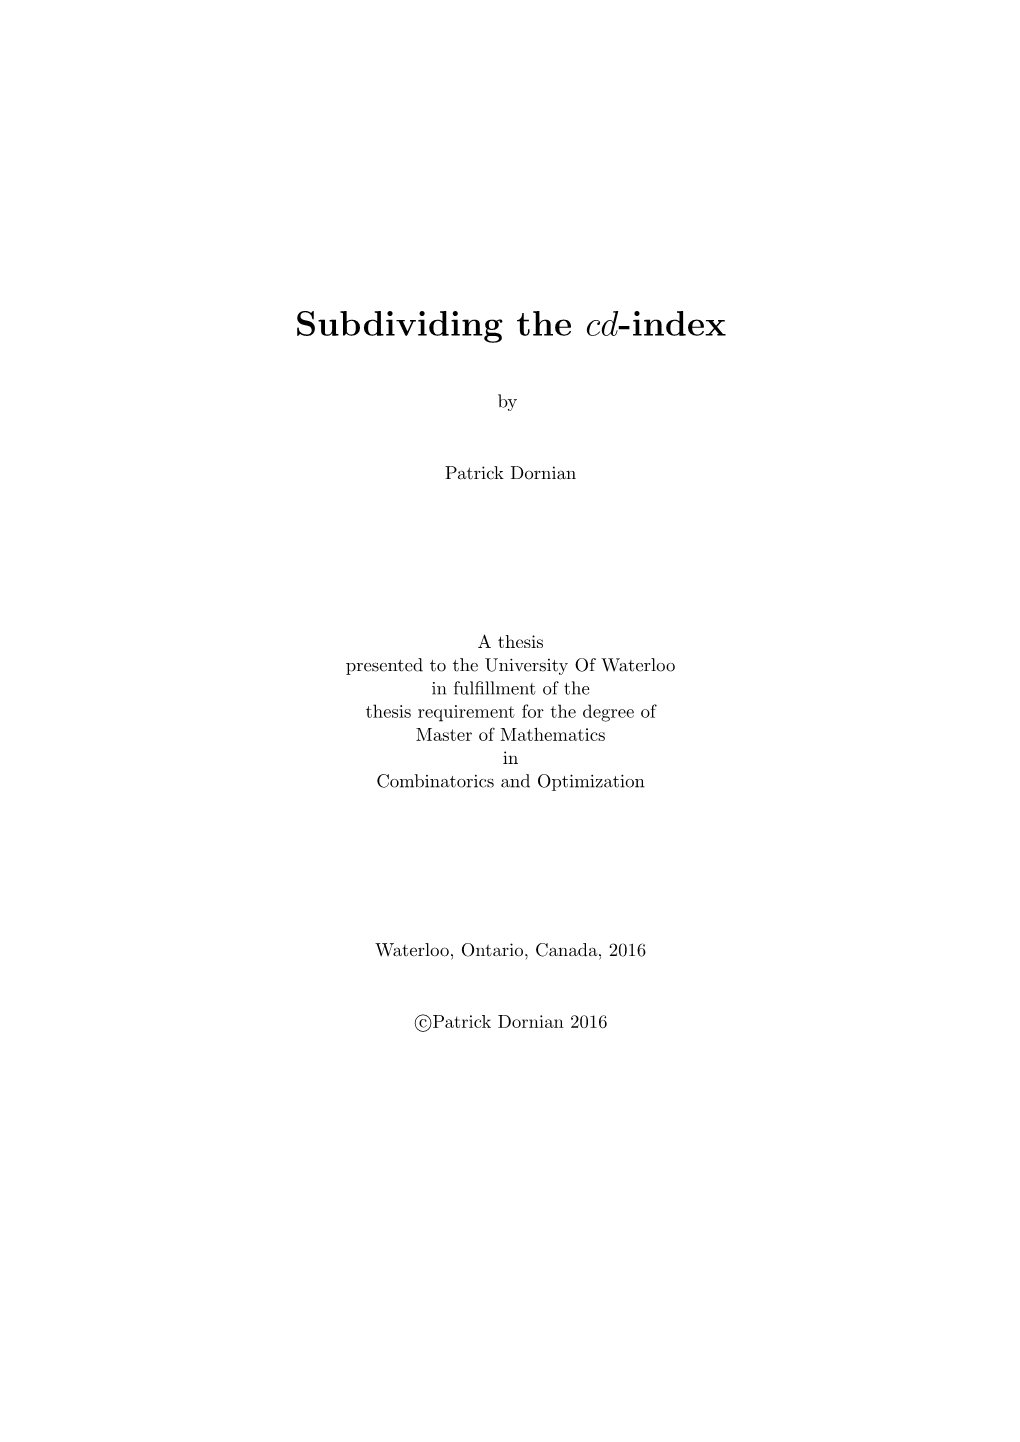 Subdividing the Cd-Index